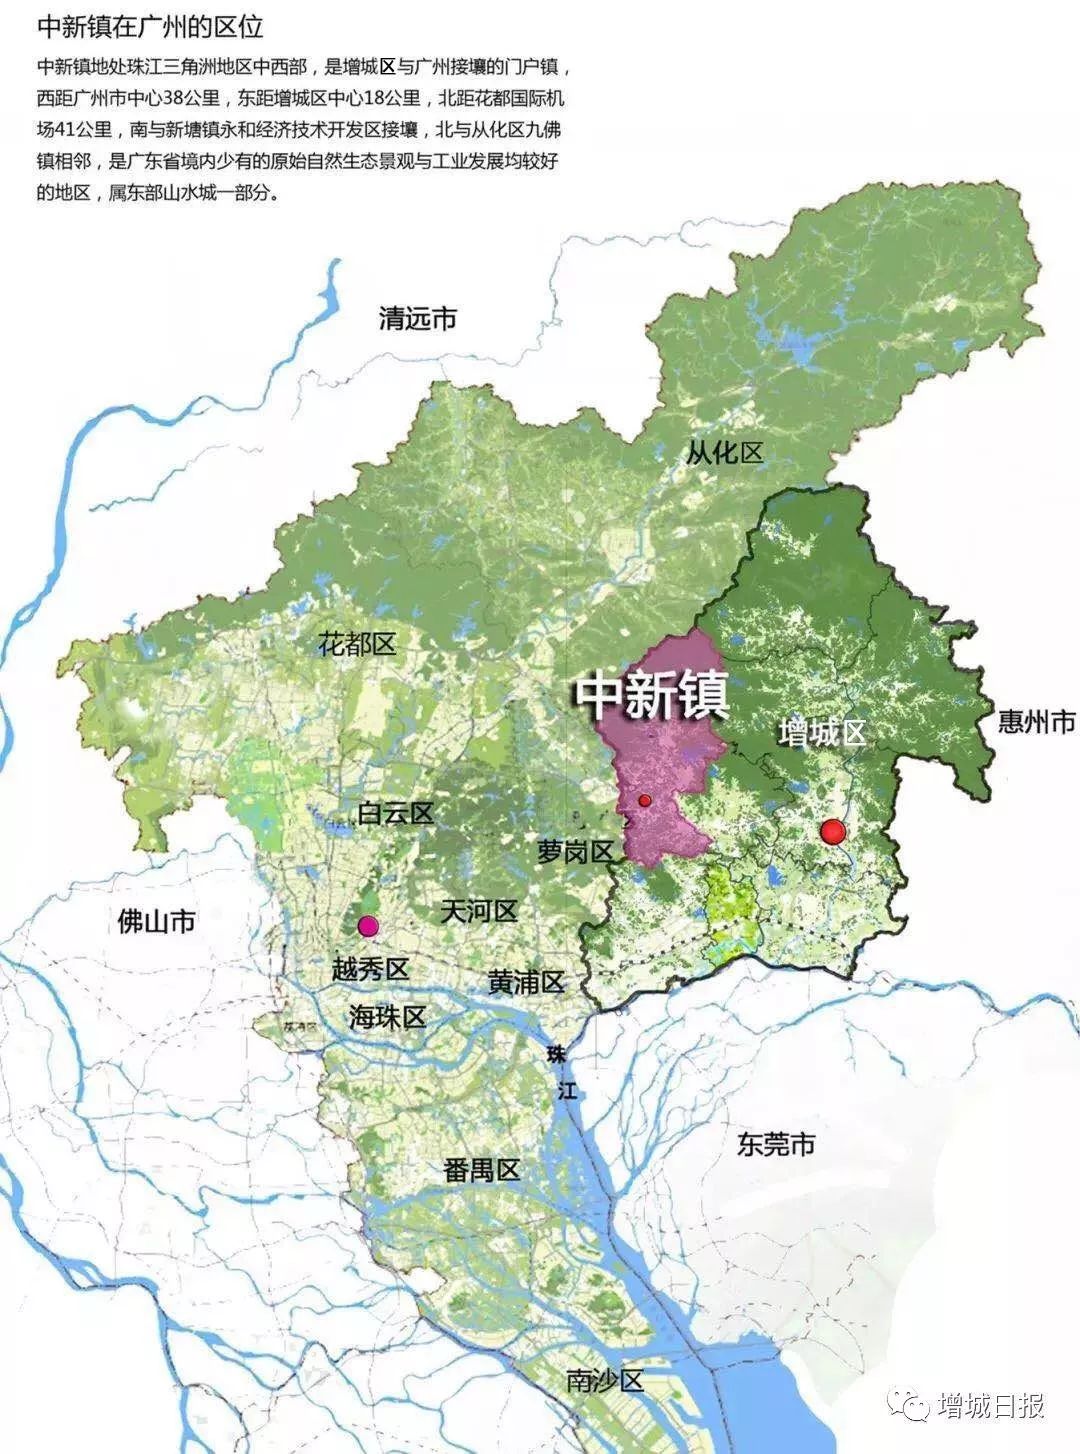 关注广州要建中部地区城乡融合发展示范区中新镇在其中